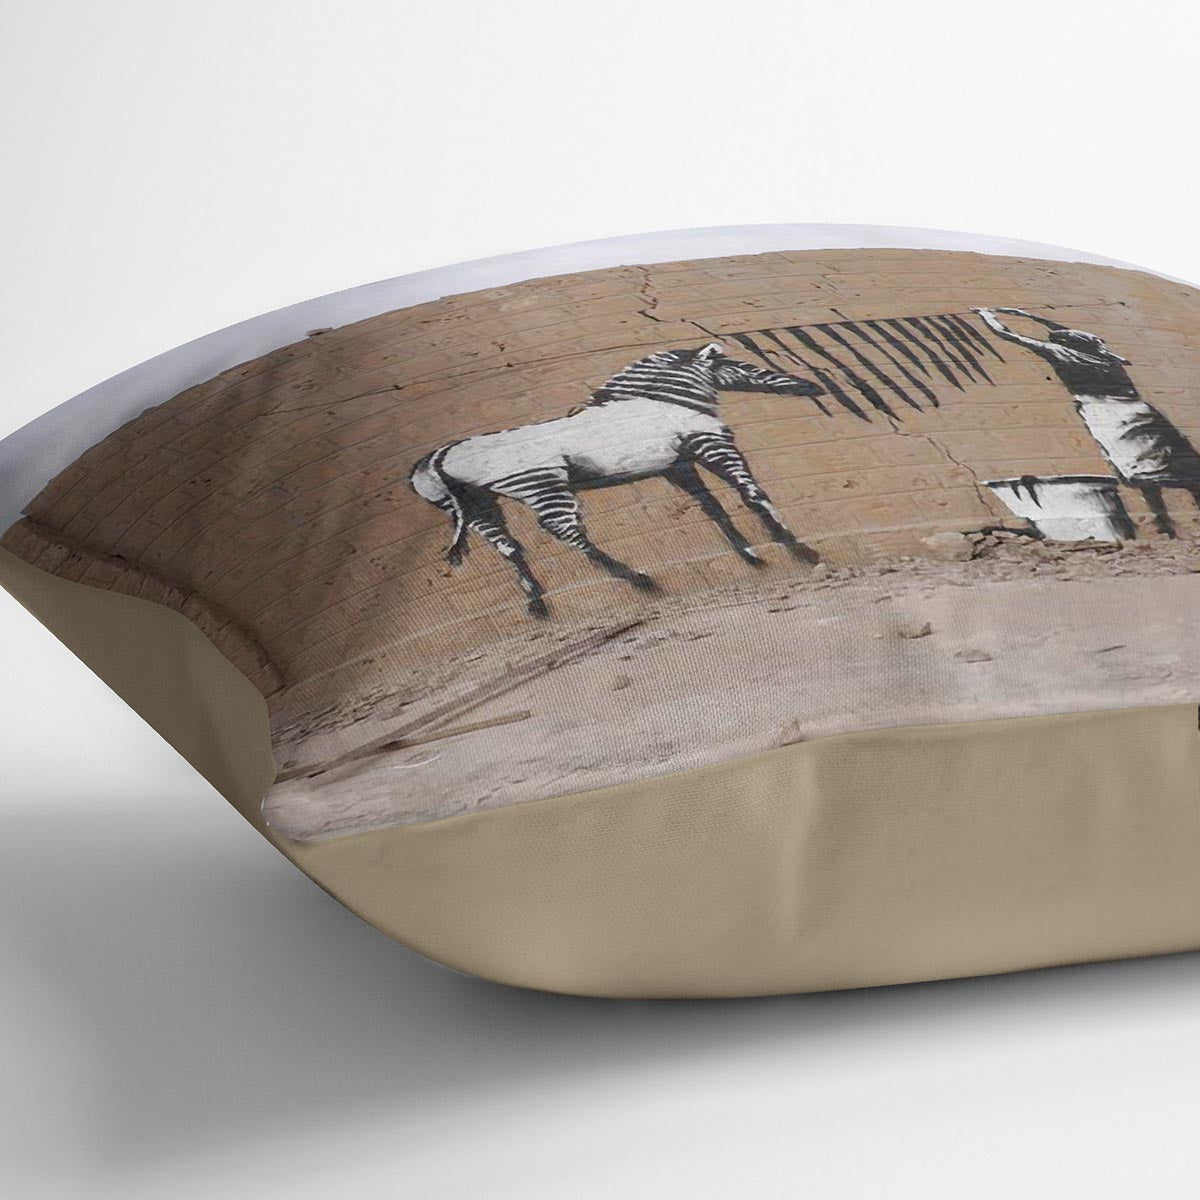 Banksy Washing Zebra Stripes Cushion